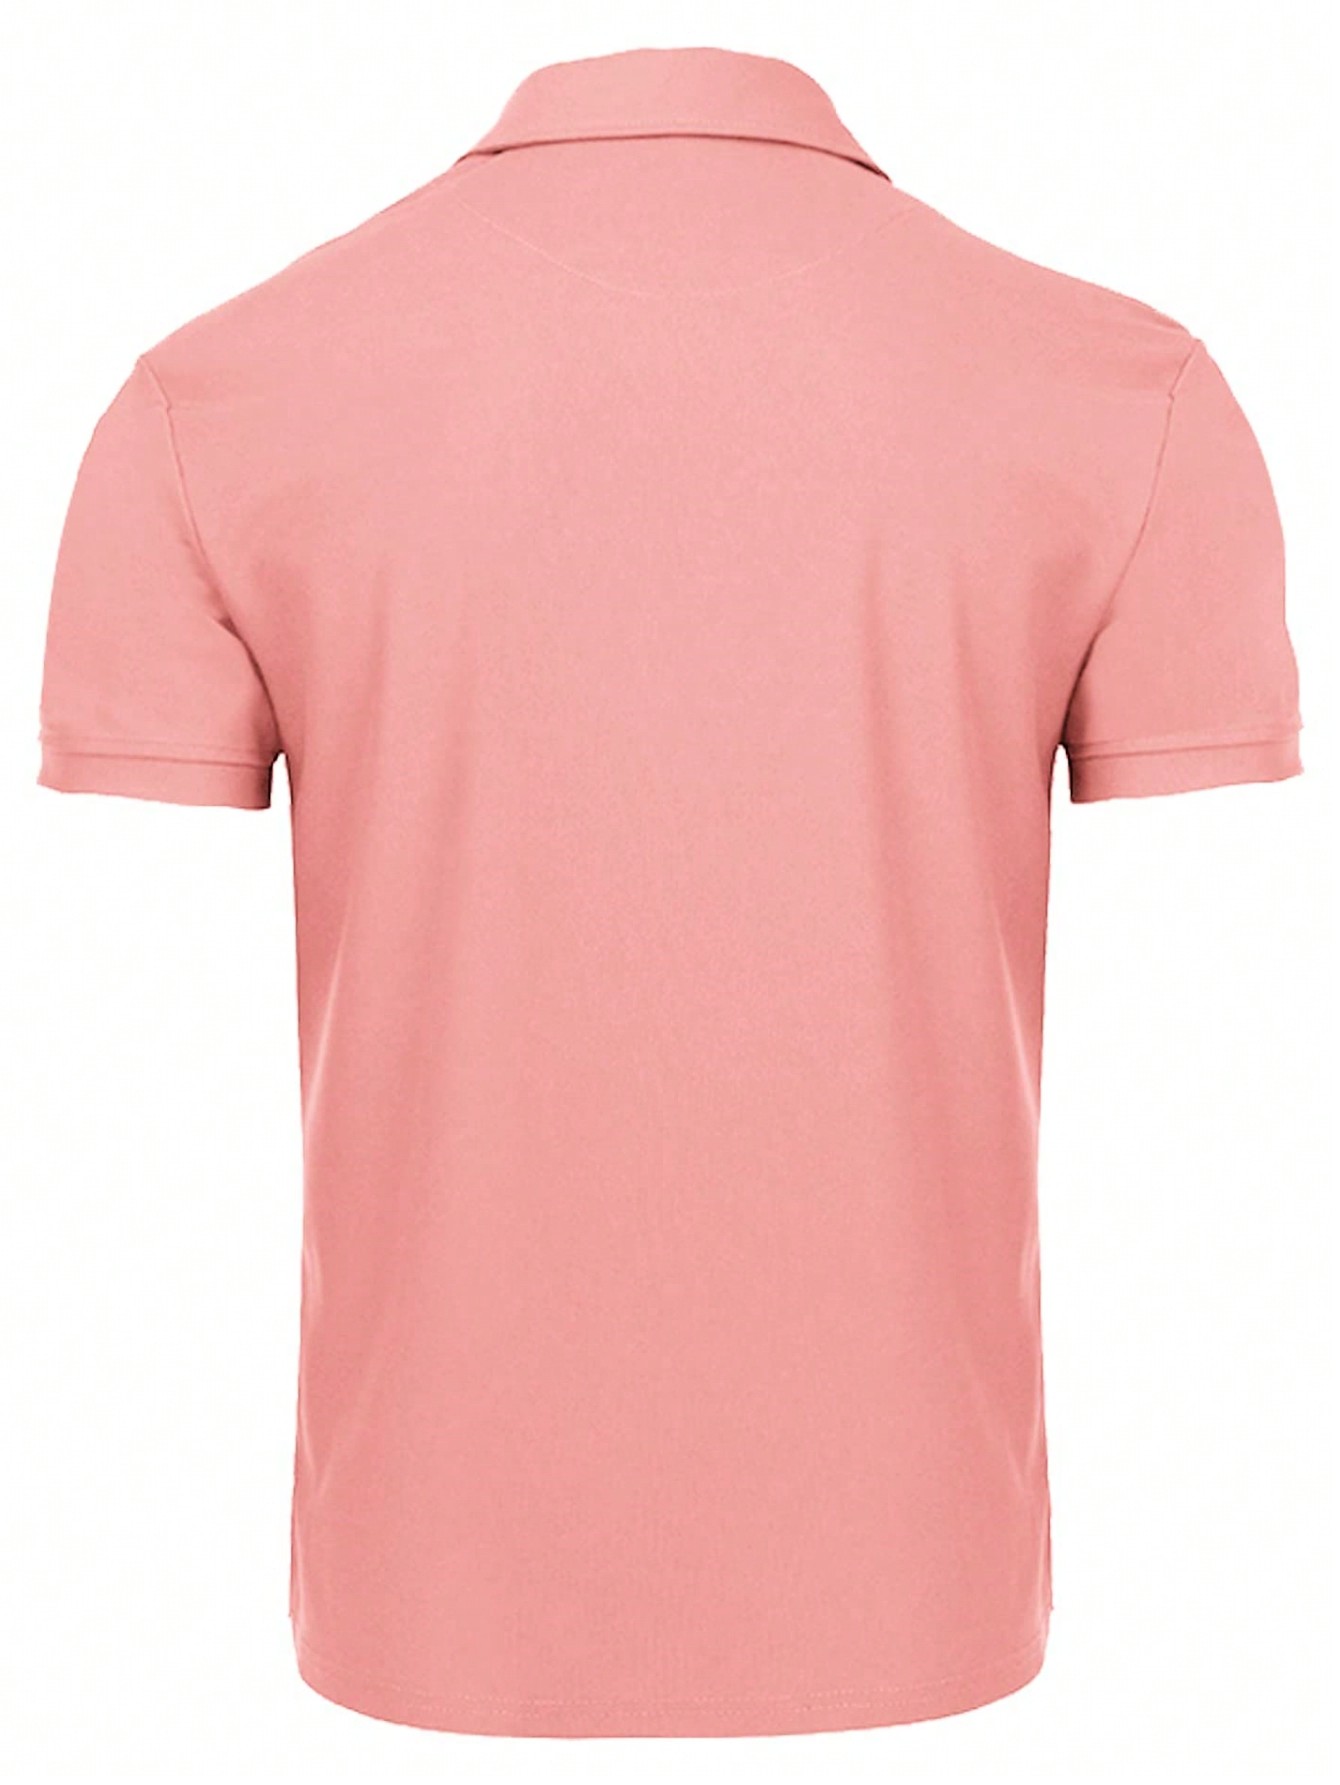 Мужская рубашка поло с коротким рукавом для отдыха, арбуз розовый фото